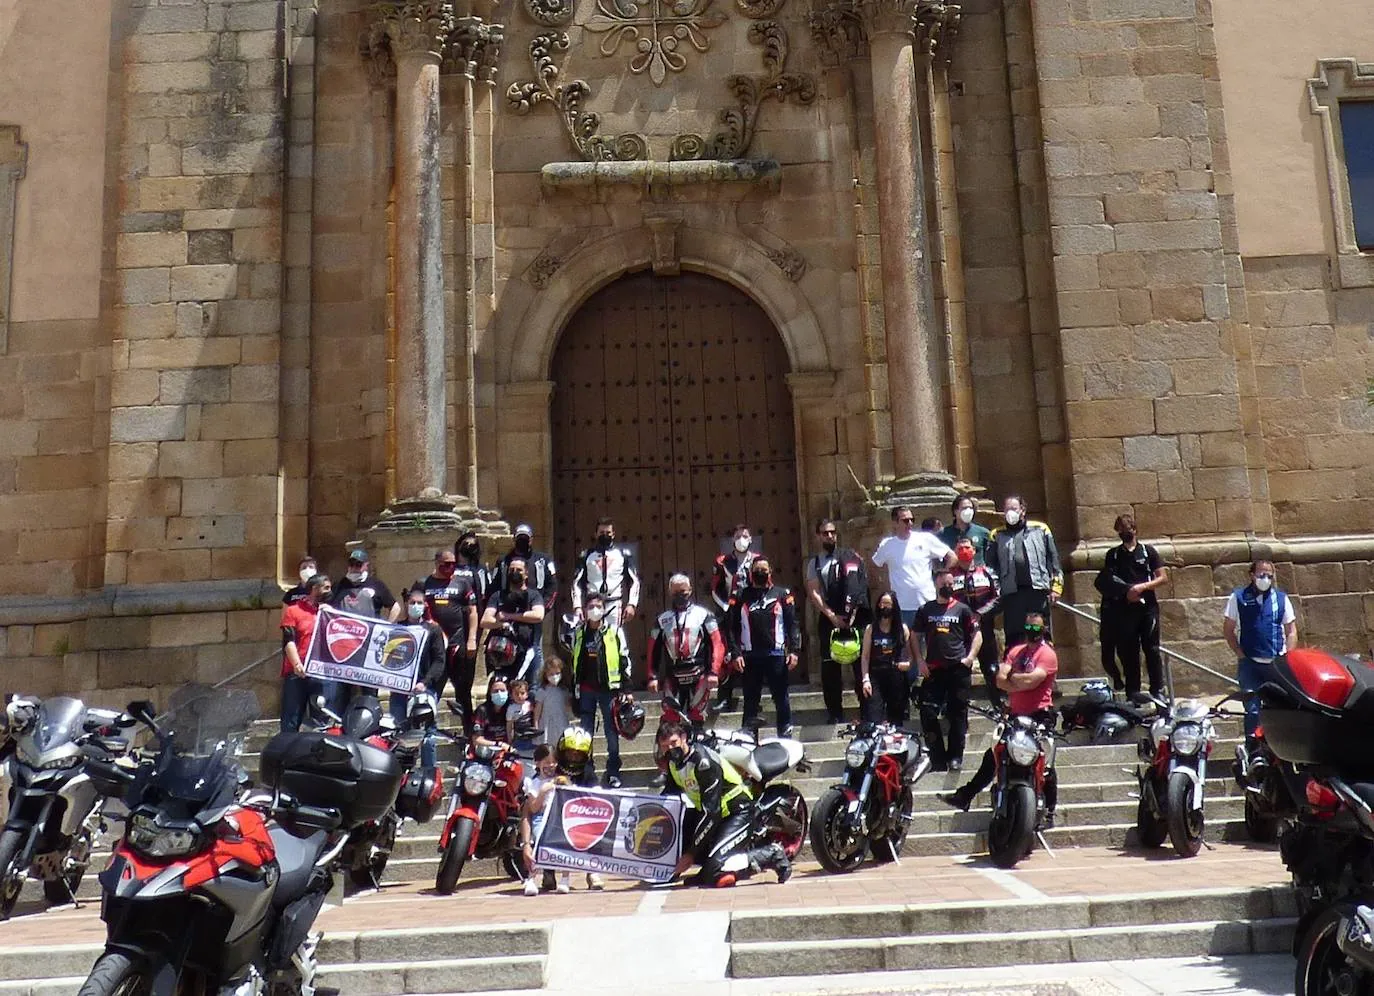 El Club Ducati Extremadura realiza la ruta de los embalses